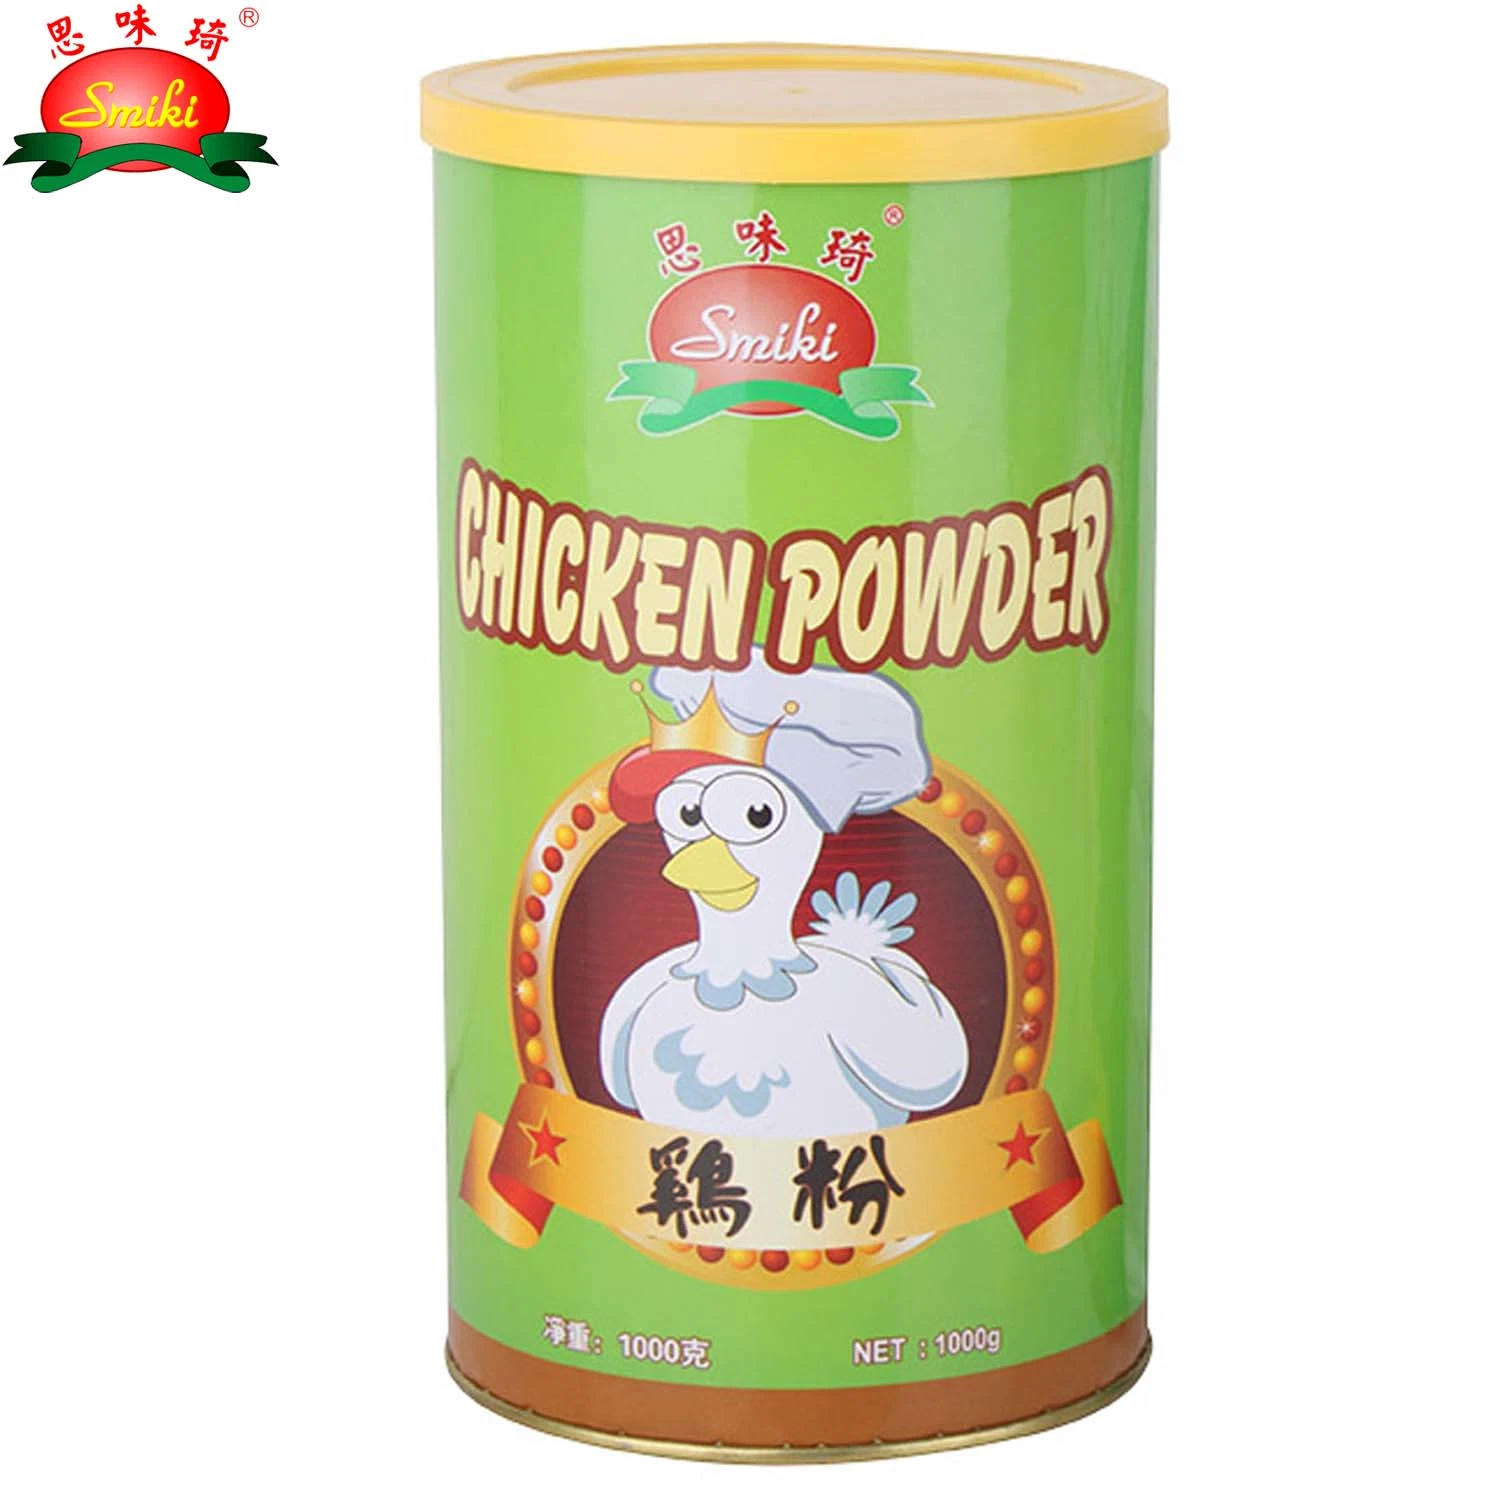 Chicken Powder with Vegetable Flavor